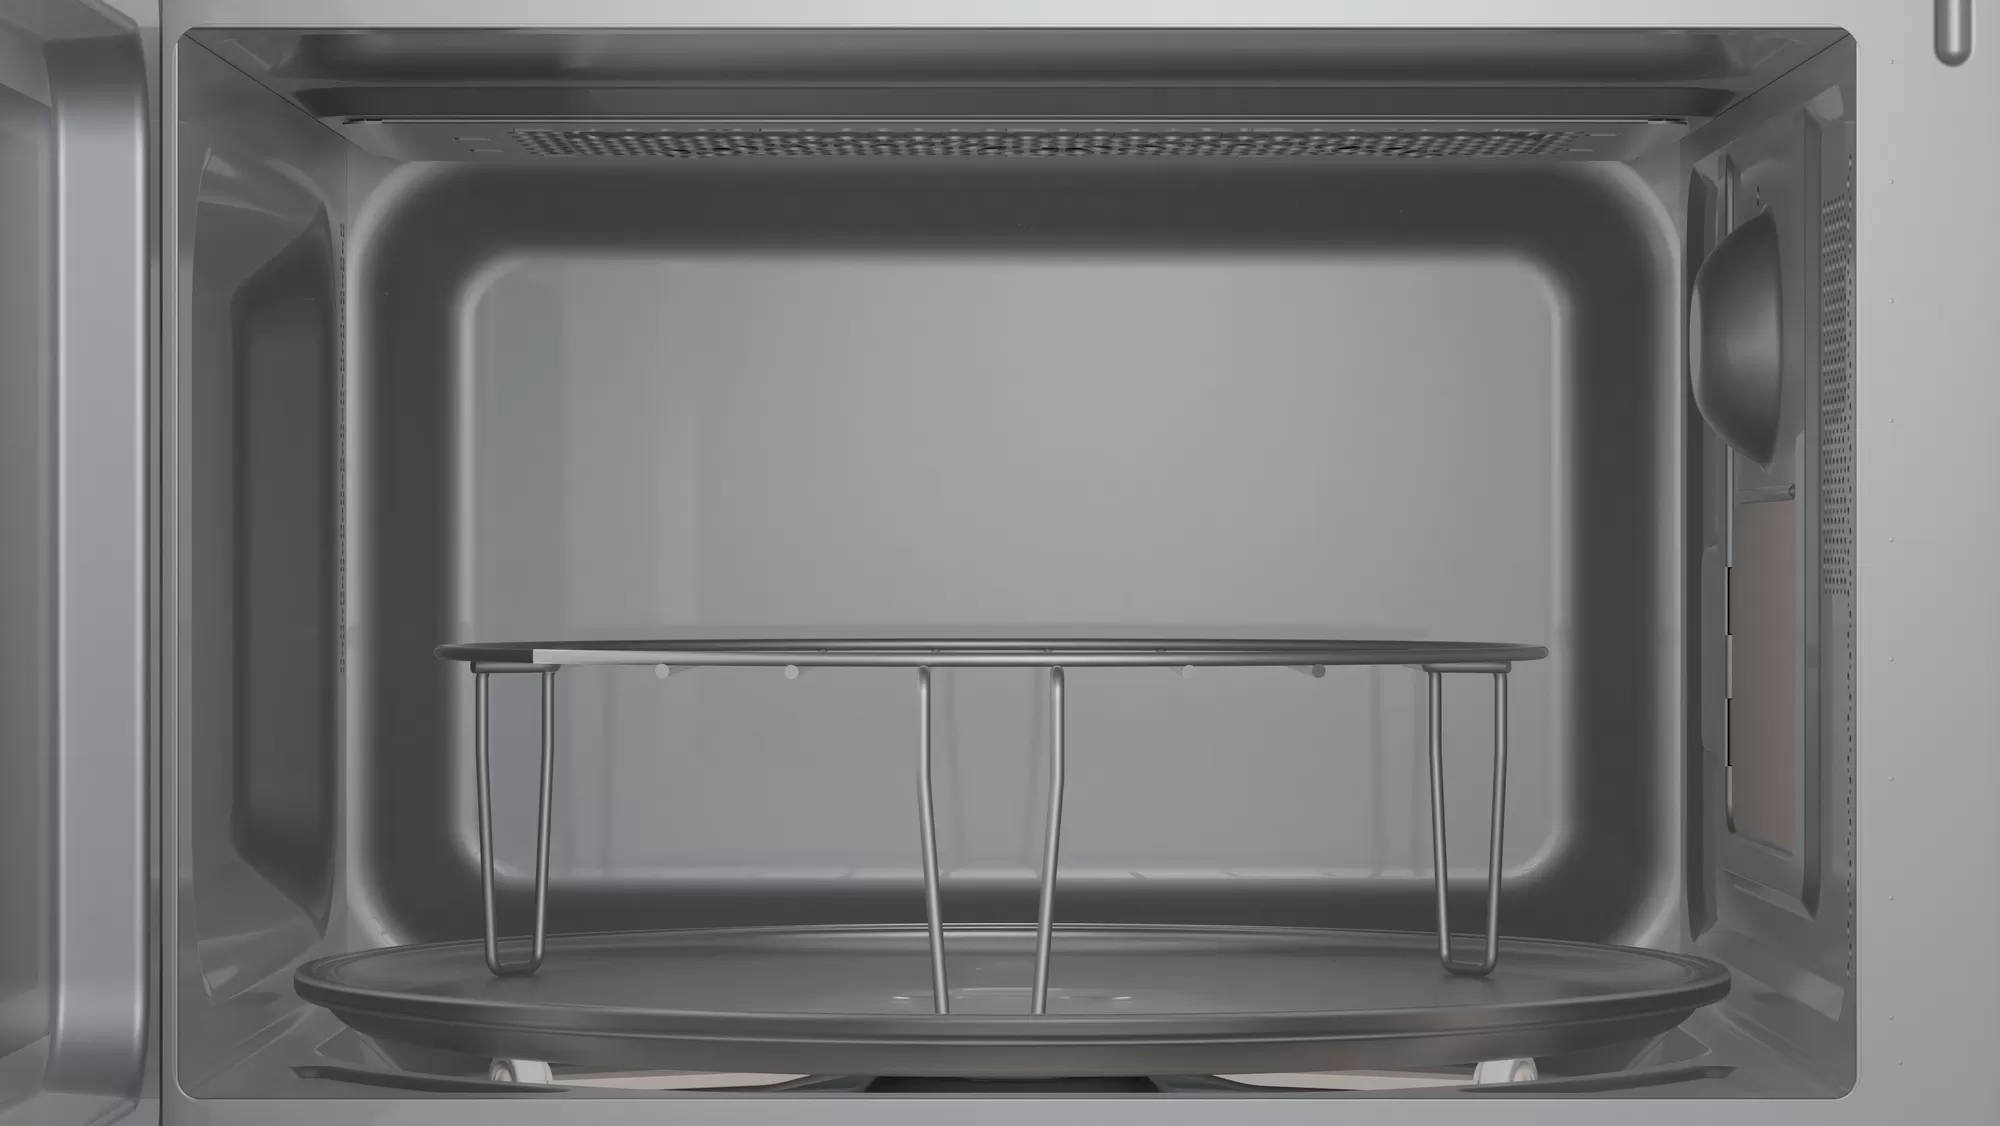 Microondas grill de 20L blanco con marco de acero inoxidable Balay 3CG6142B3